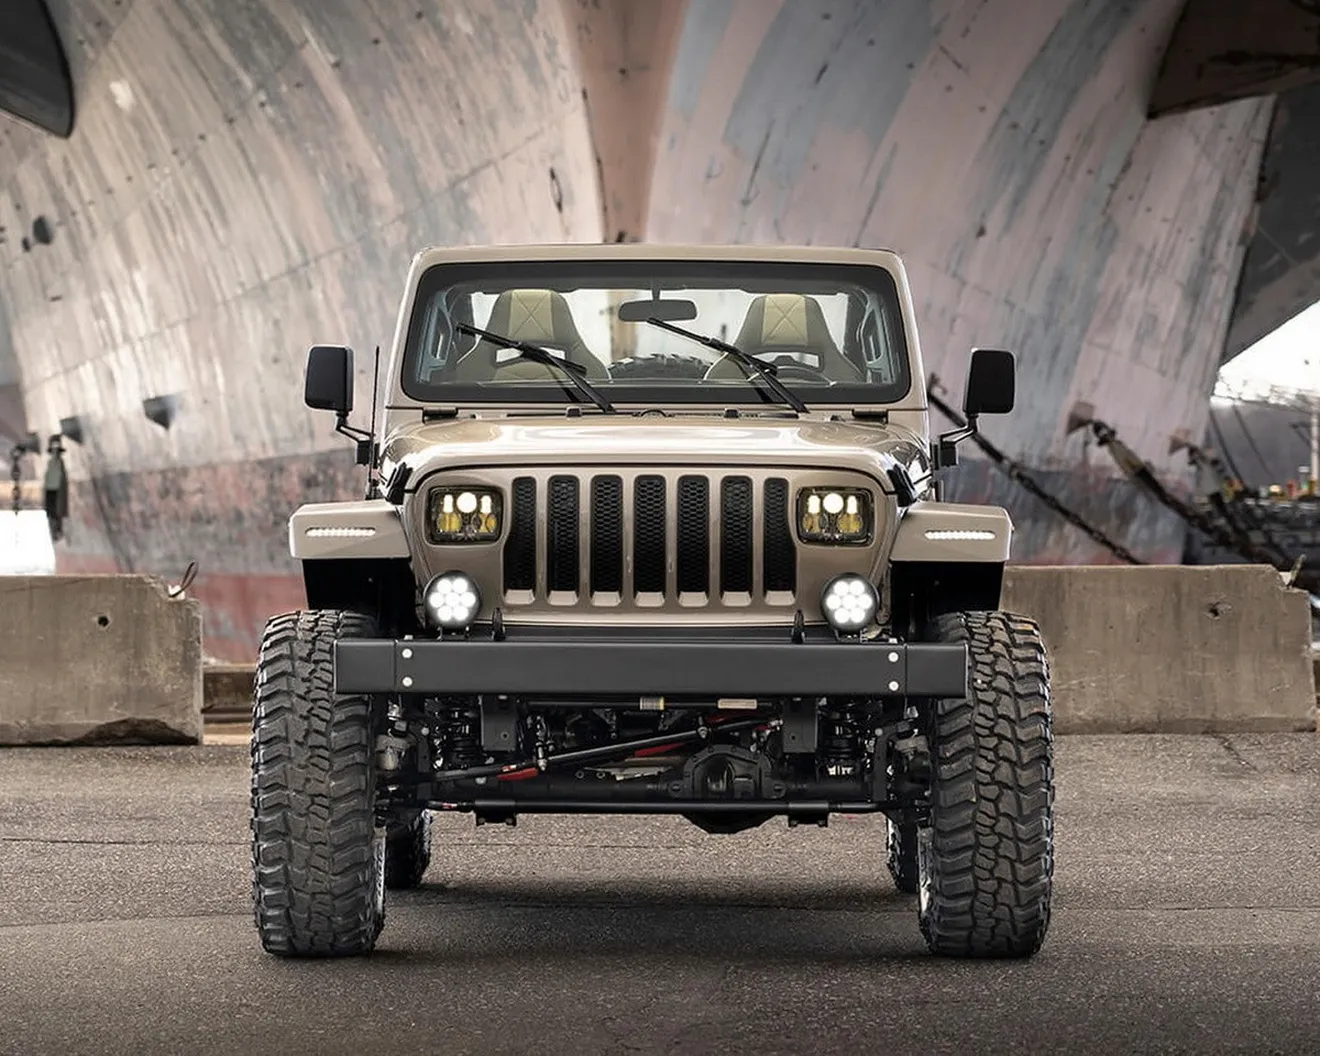 Este kit convierte tu Jeep Wrangler actual en el Jeep clásico de MacGyver